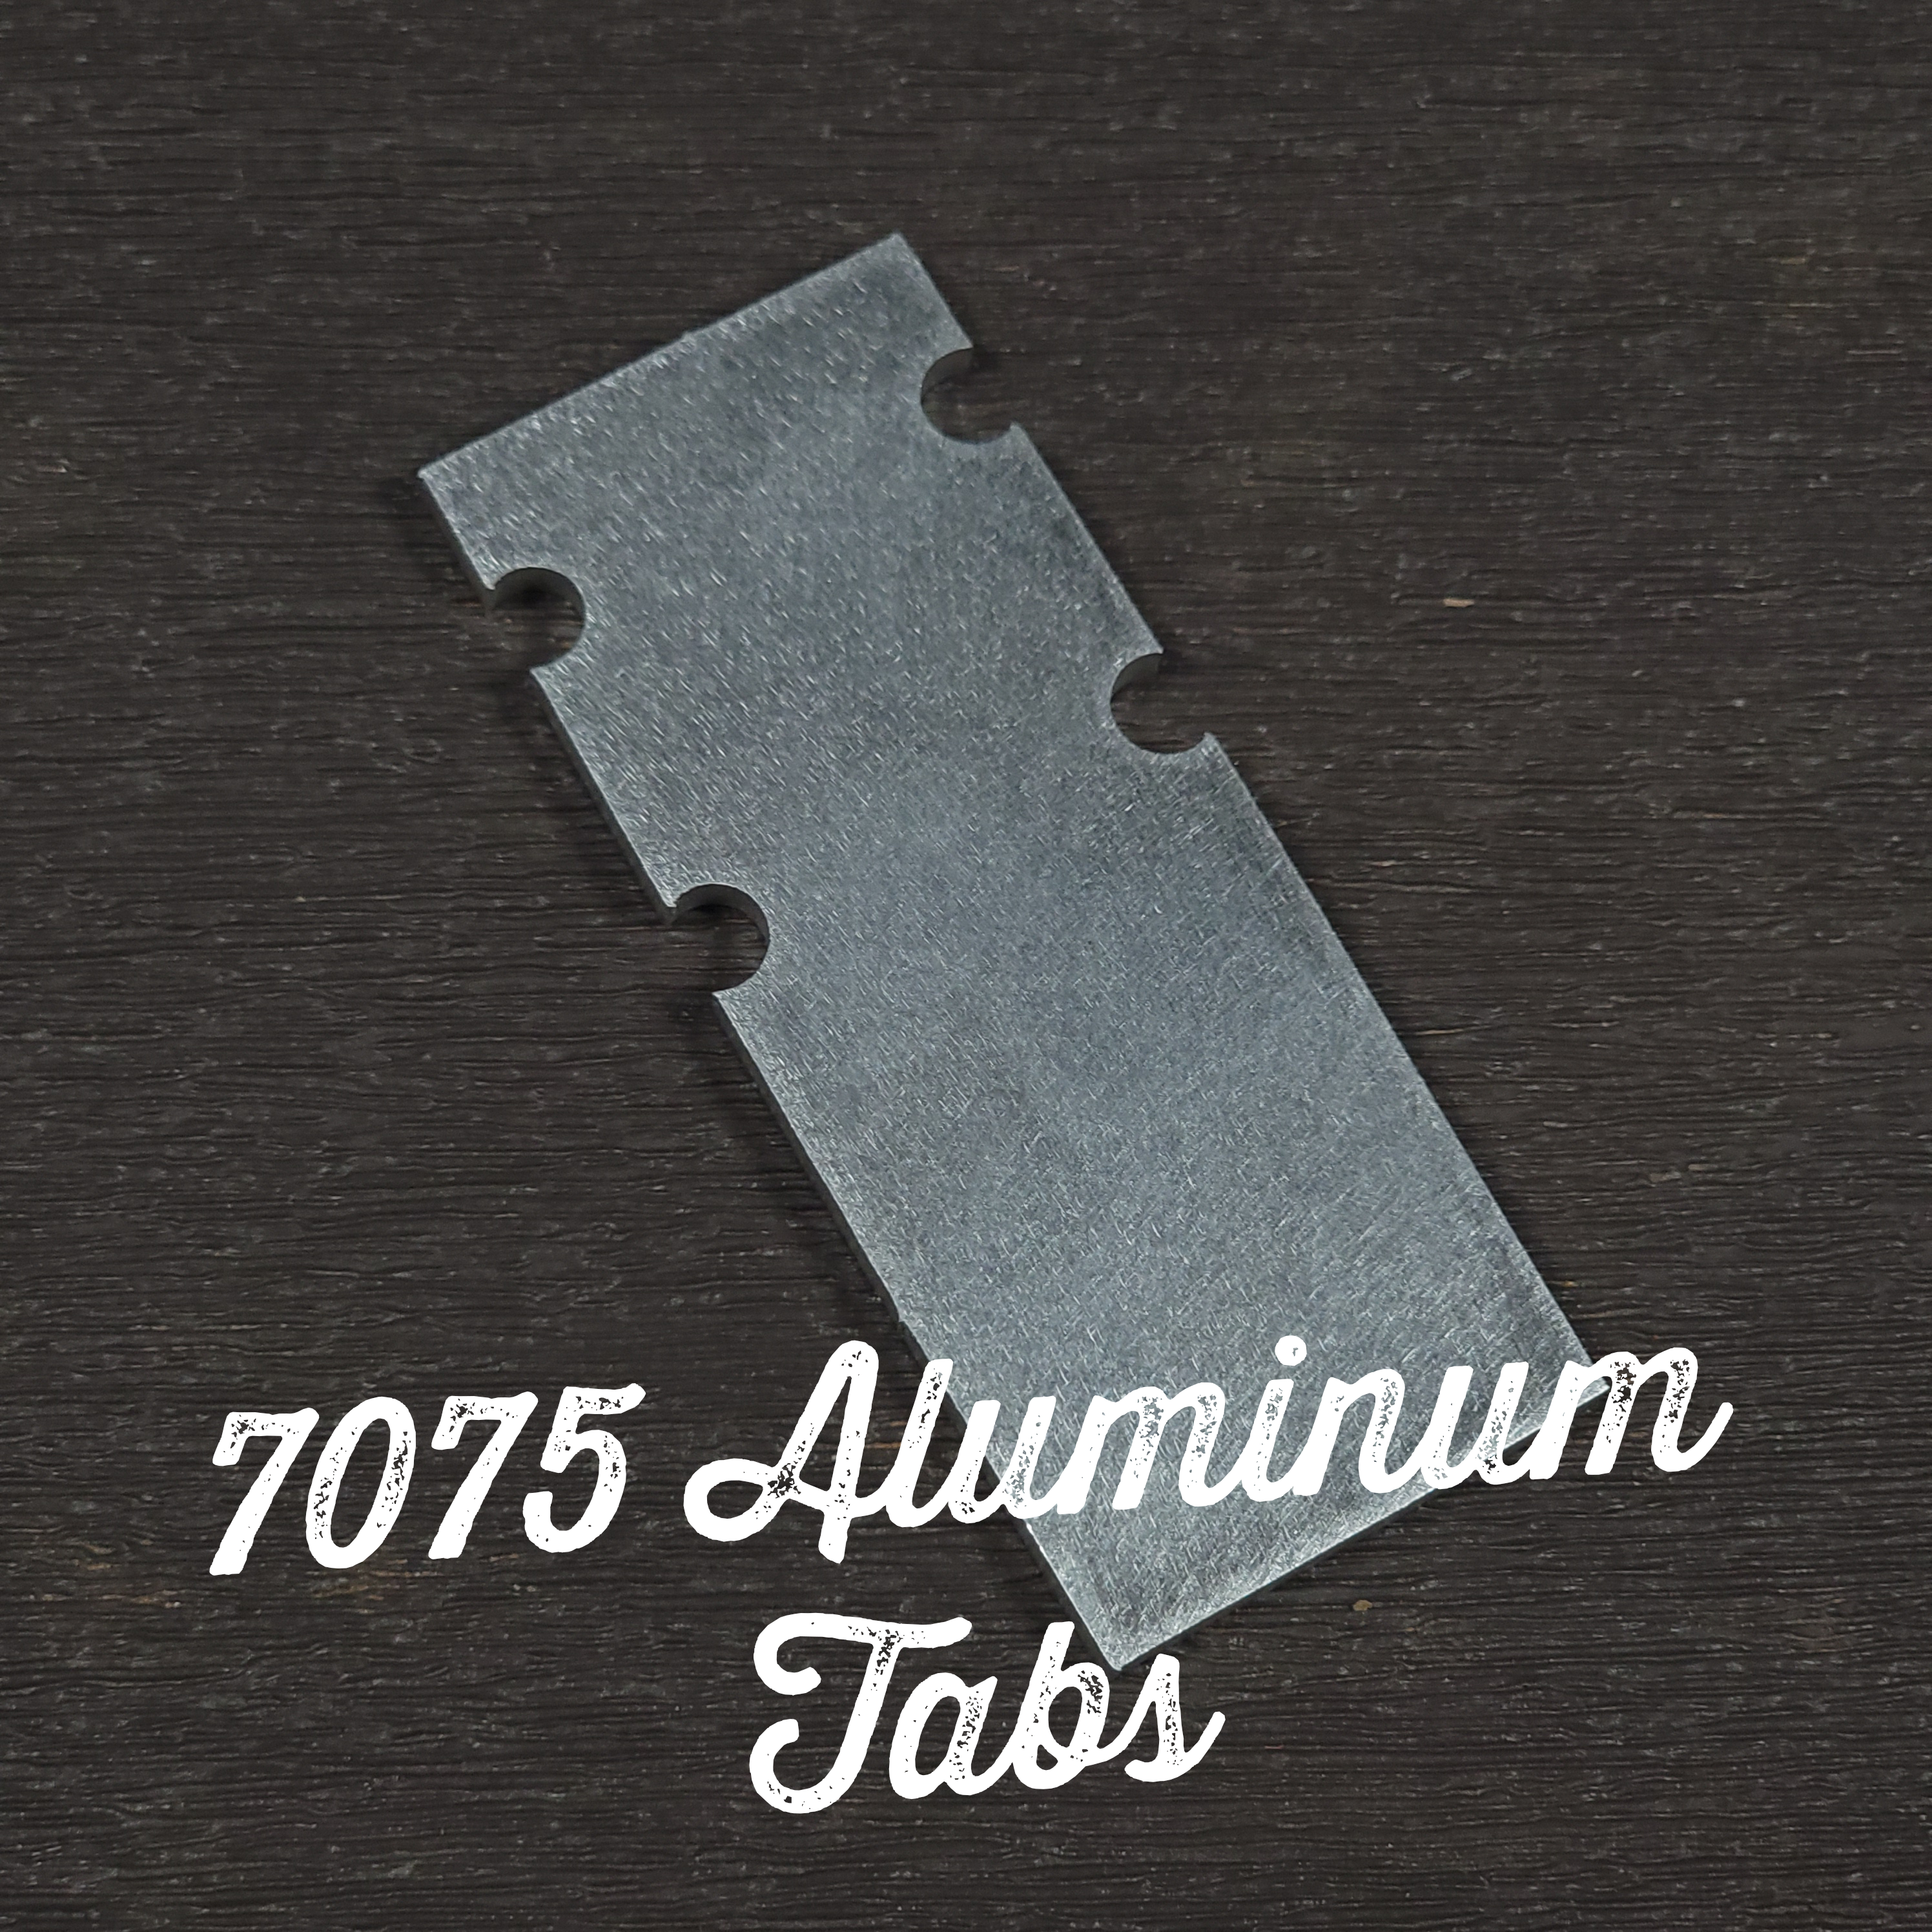 114 - Premium 7075 Aluminum Tab for 806/80x Clamp Adapter